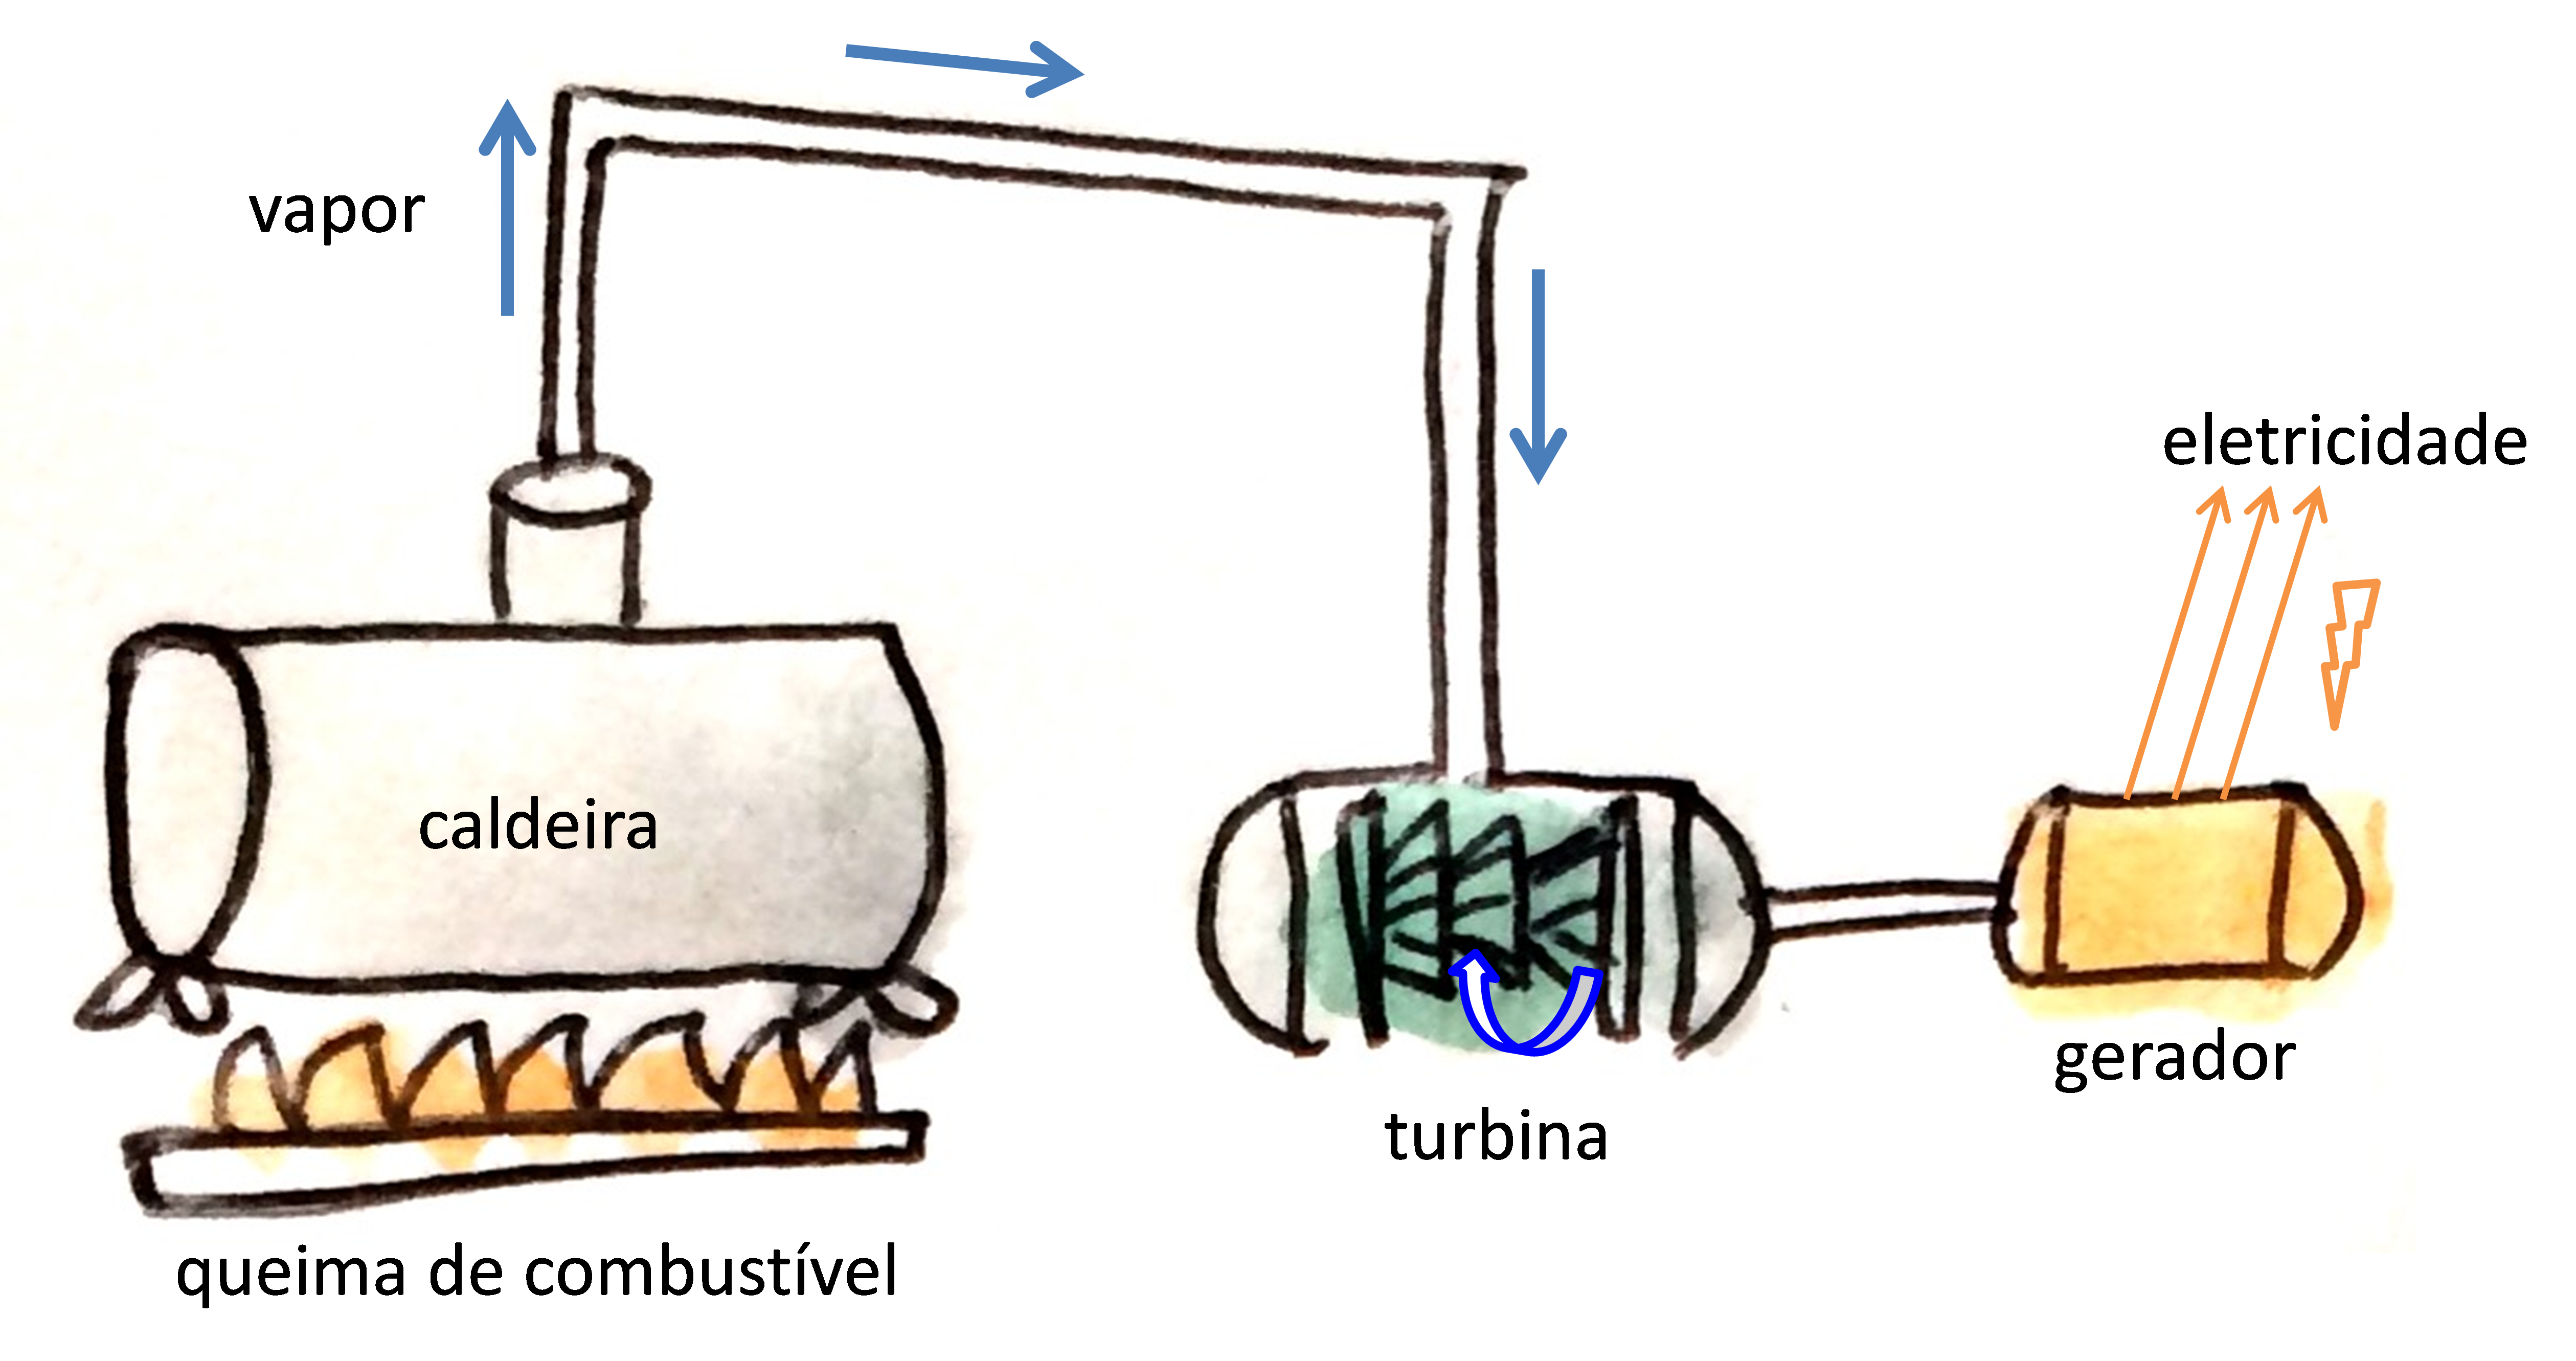 queima de combustível na caldeira, gera vapor, que gira turbina e aciona o gerador para gerar eletricidade